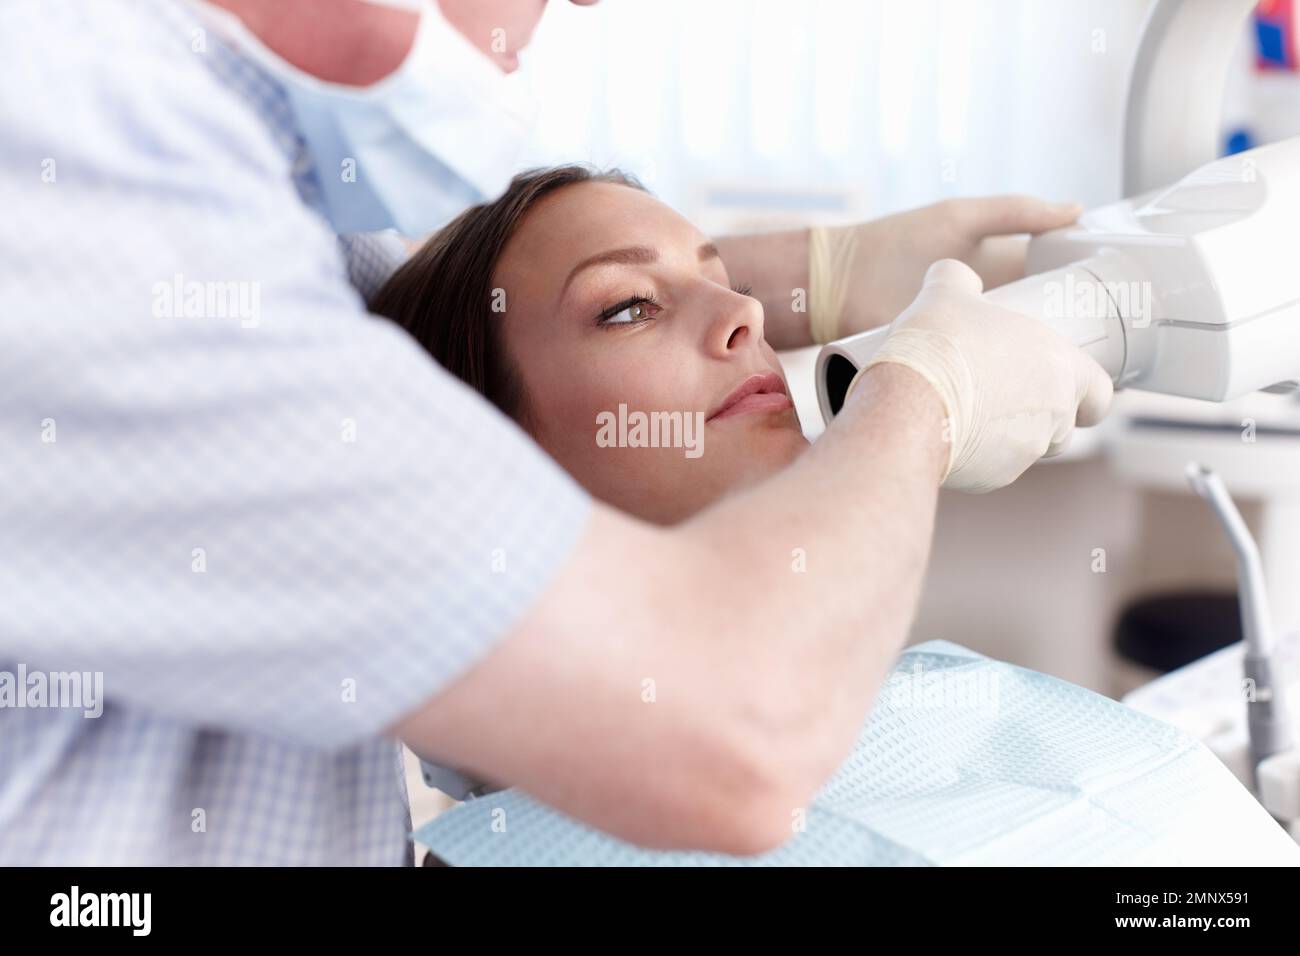 Paziente di sesso femminile sottoposto a trattamento dentale. Ritratto della paziente che passa attraverso il trattamento dentale in clinica. Foto Stock